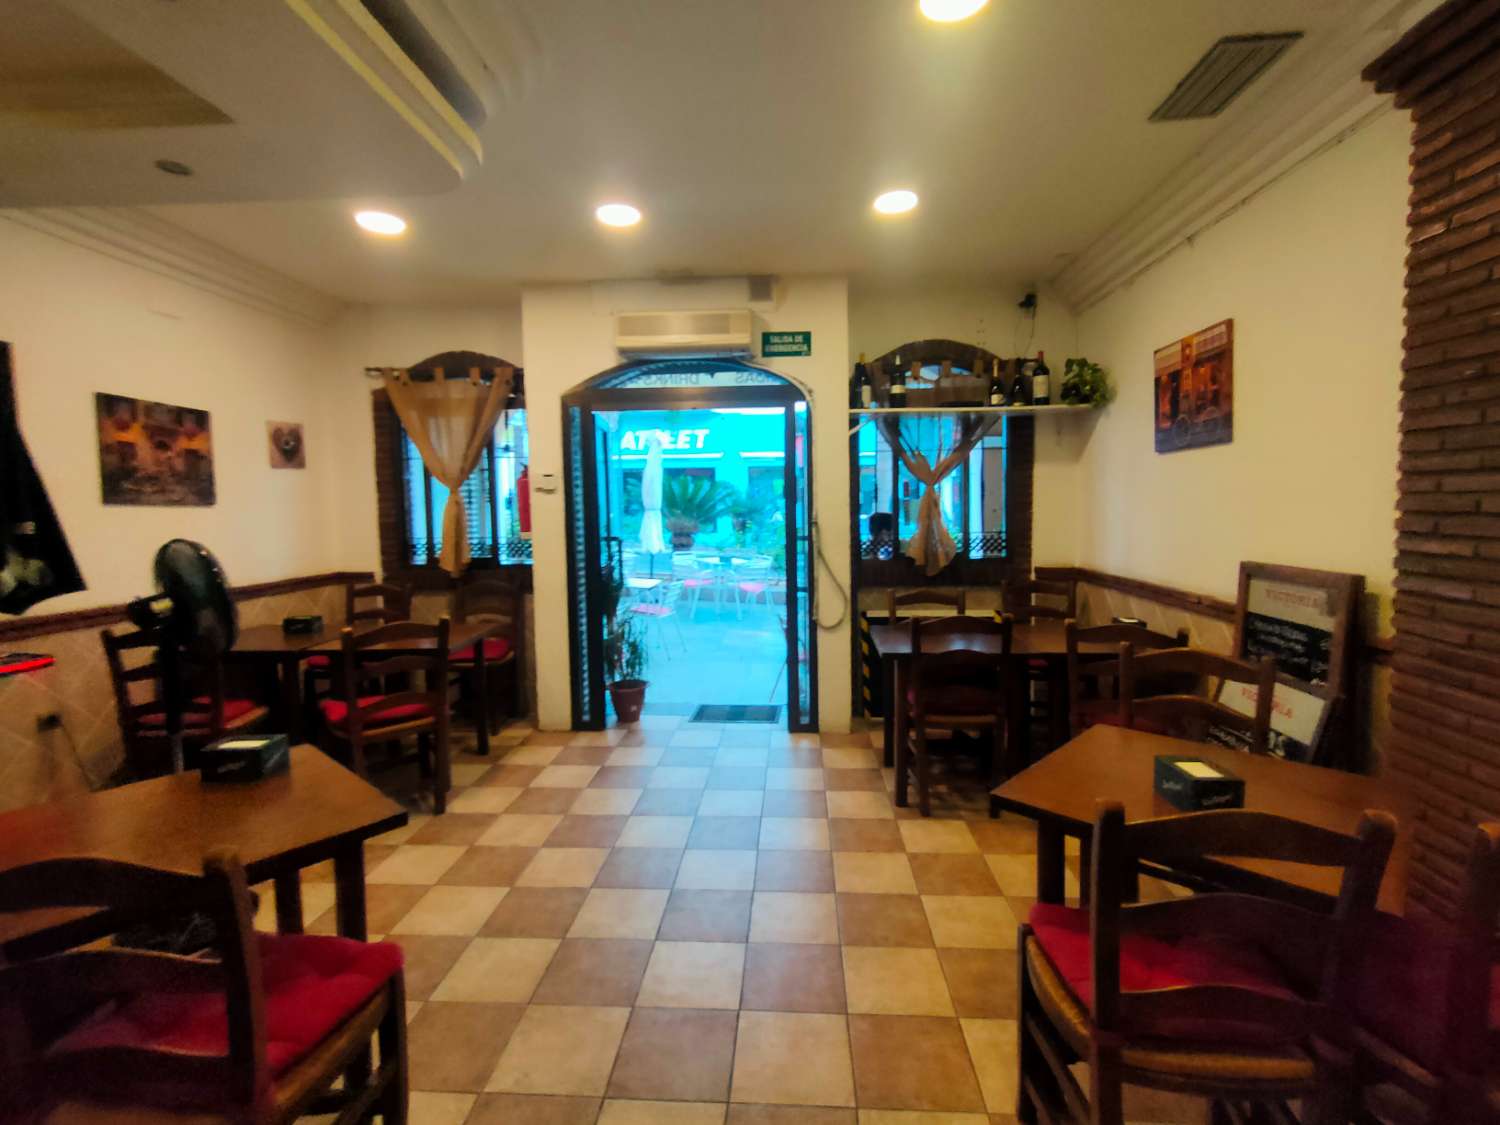 Cafe Bar  Bistrot in vendita a Arroyo de la Miel, Benalmadena Costa del Sol - AREA PRIME